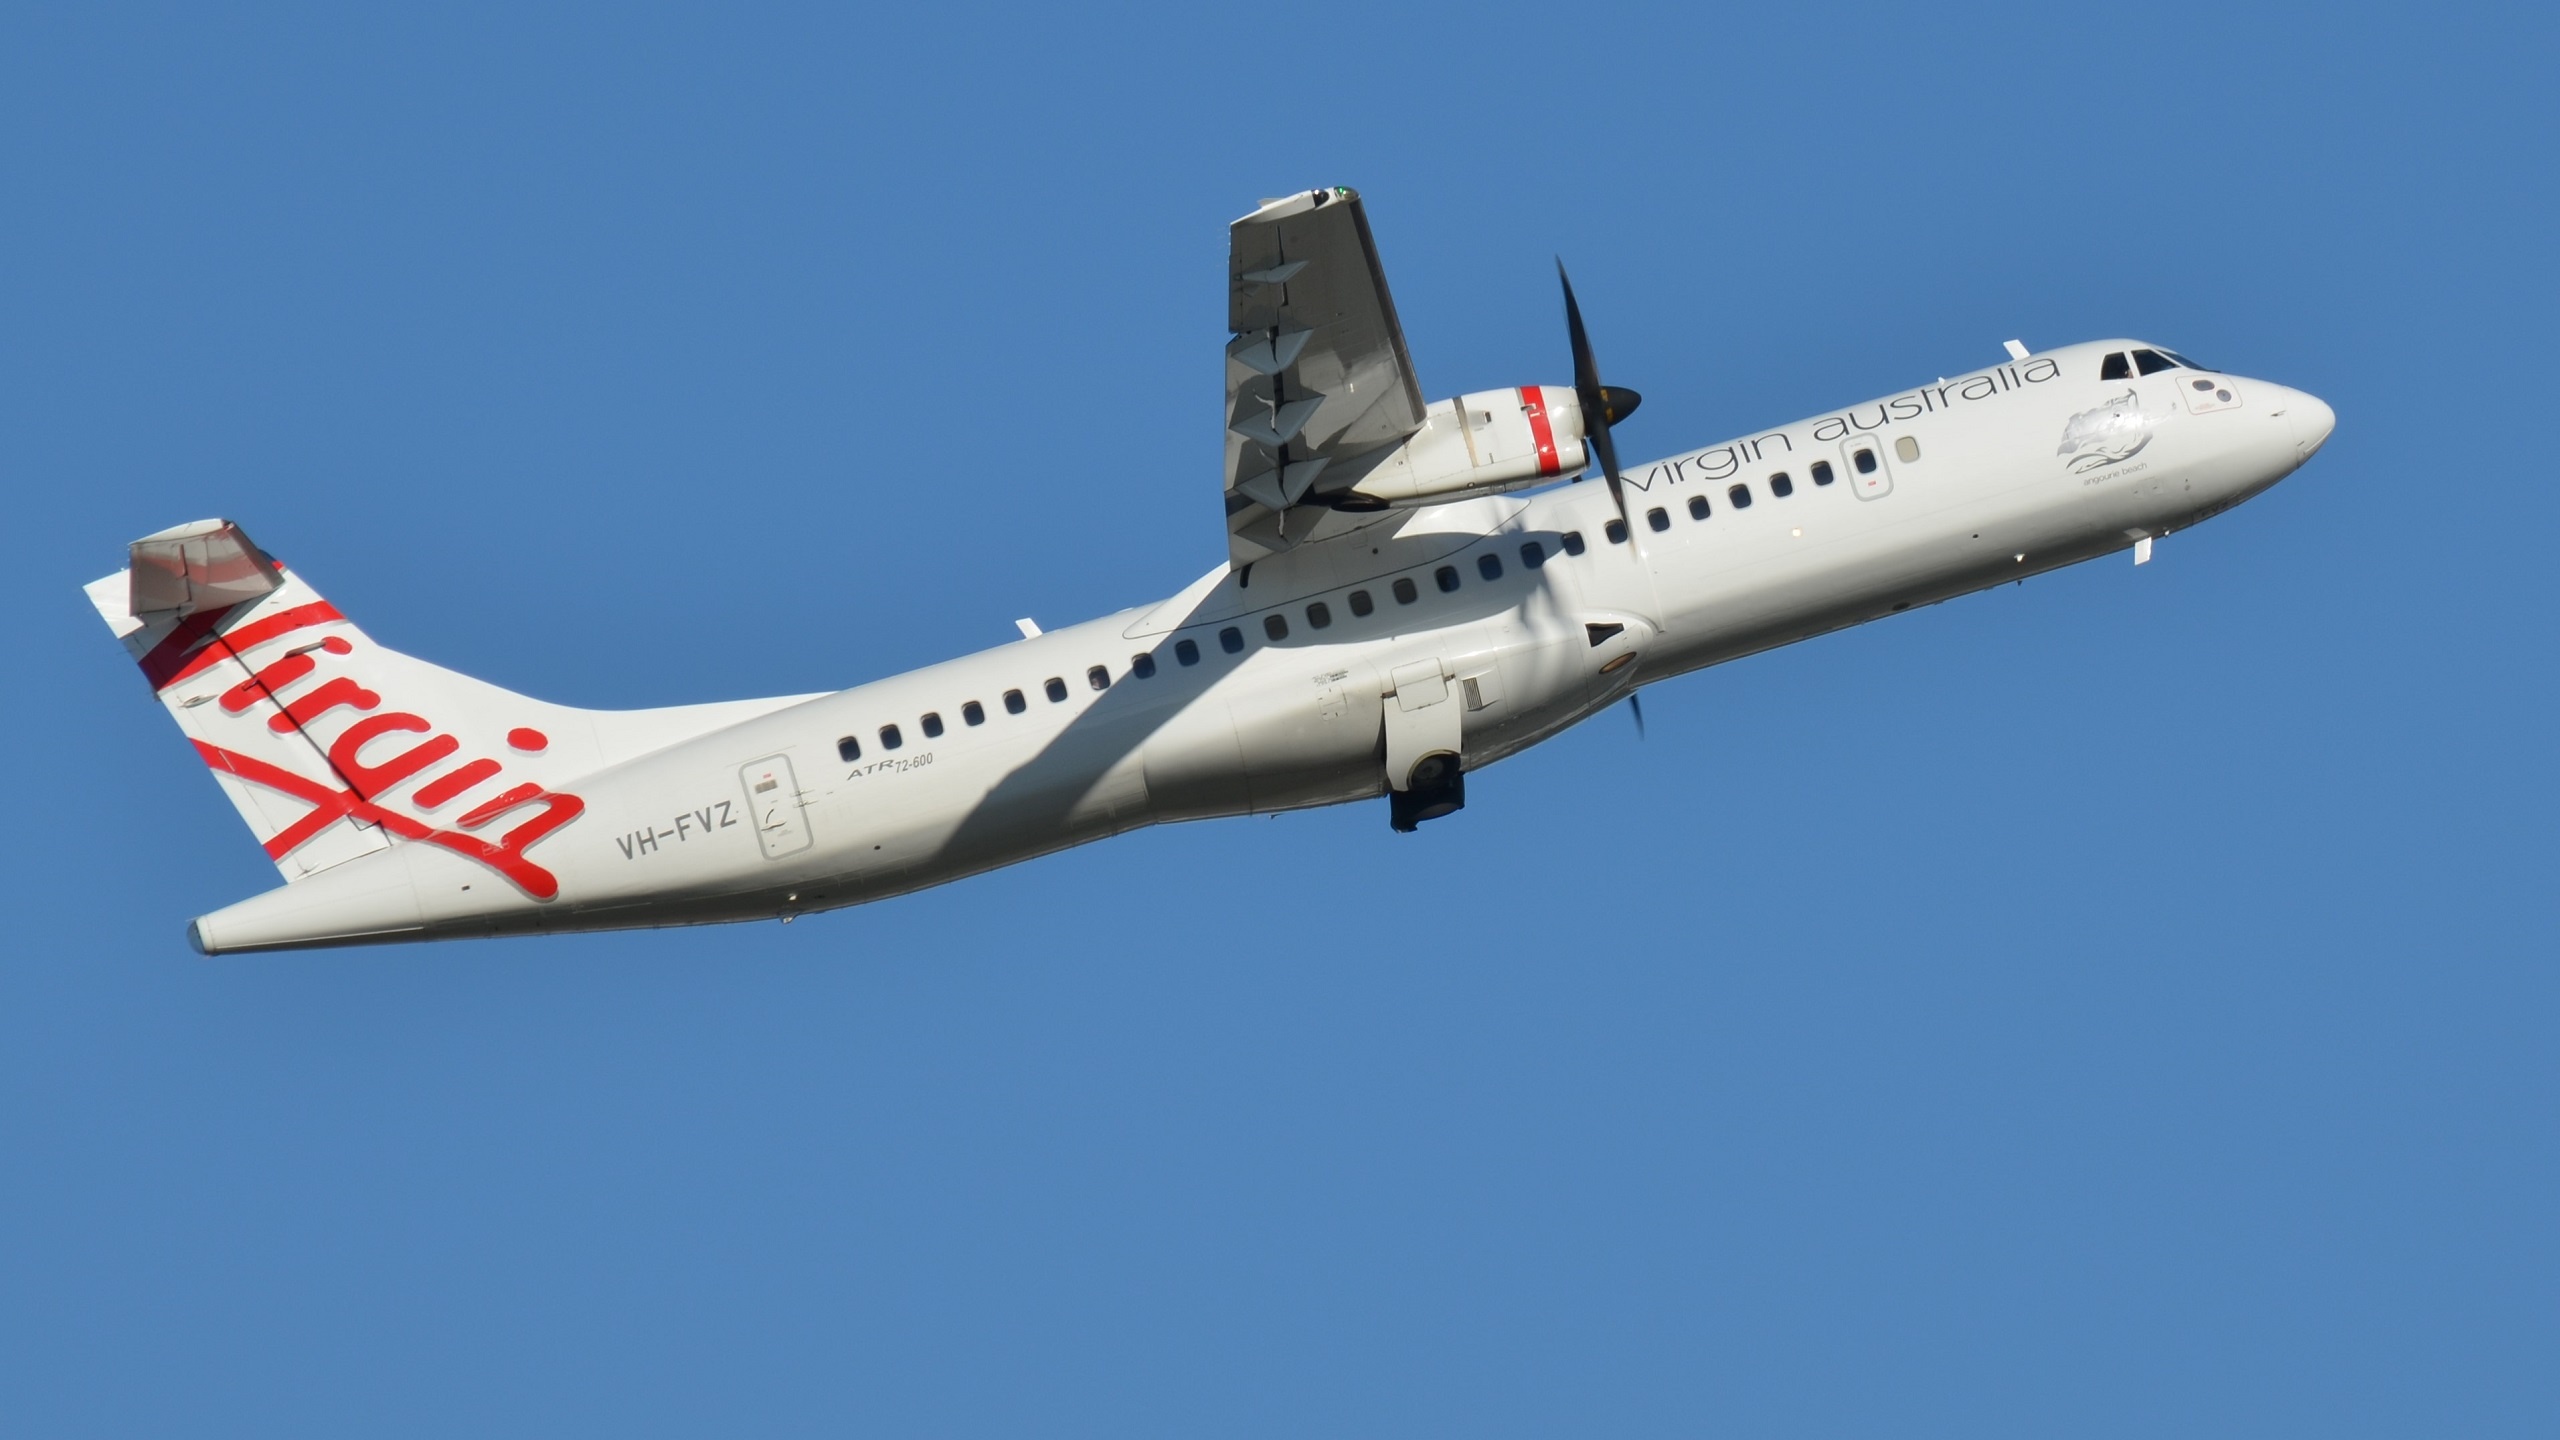 ATR aircraft, Passenger plane, HD wallpapers, Travel and aviation, 2560x1440 HD Desktop